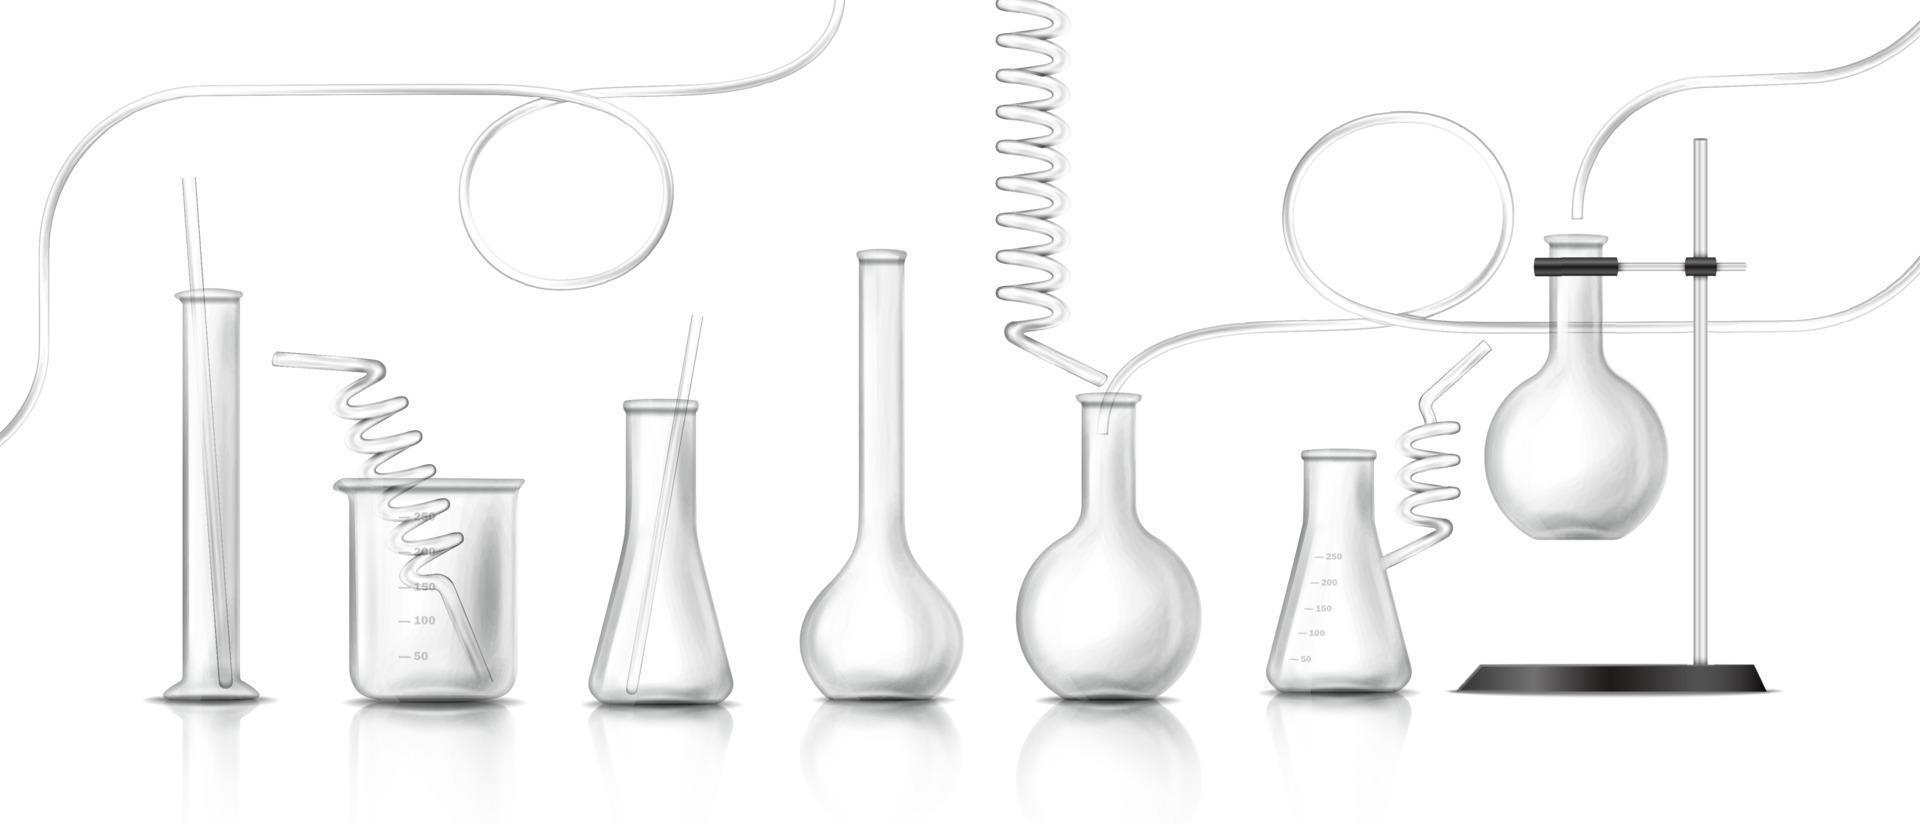 3d realistisch Vektor Symbol. Labor Ausrüstung, Labor Glaswaren. Wissenschaft und Biologie Bildung Konzept.